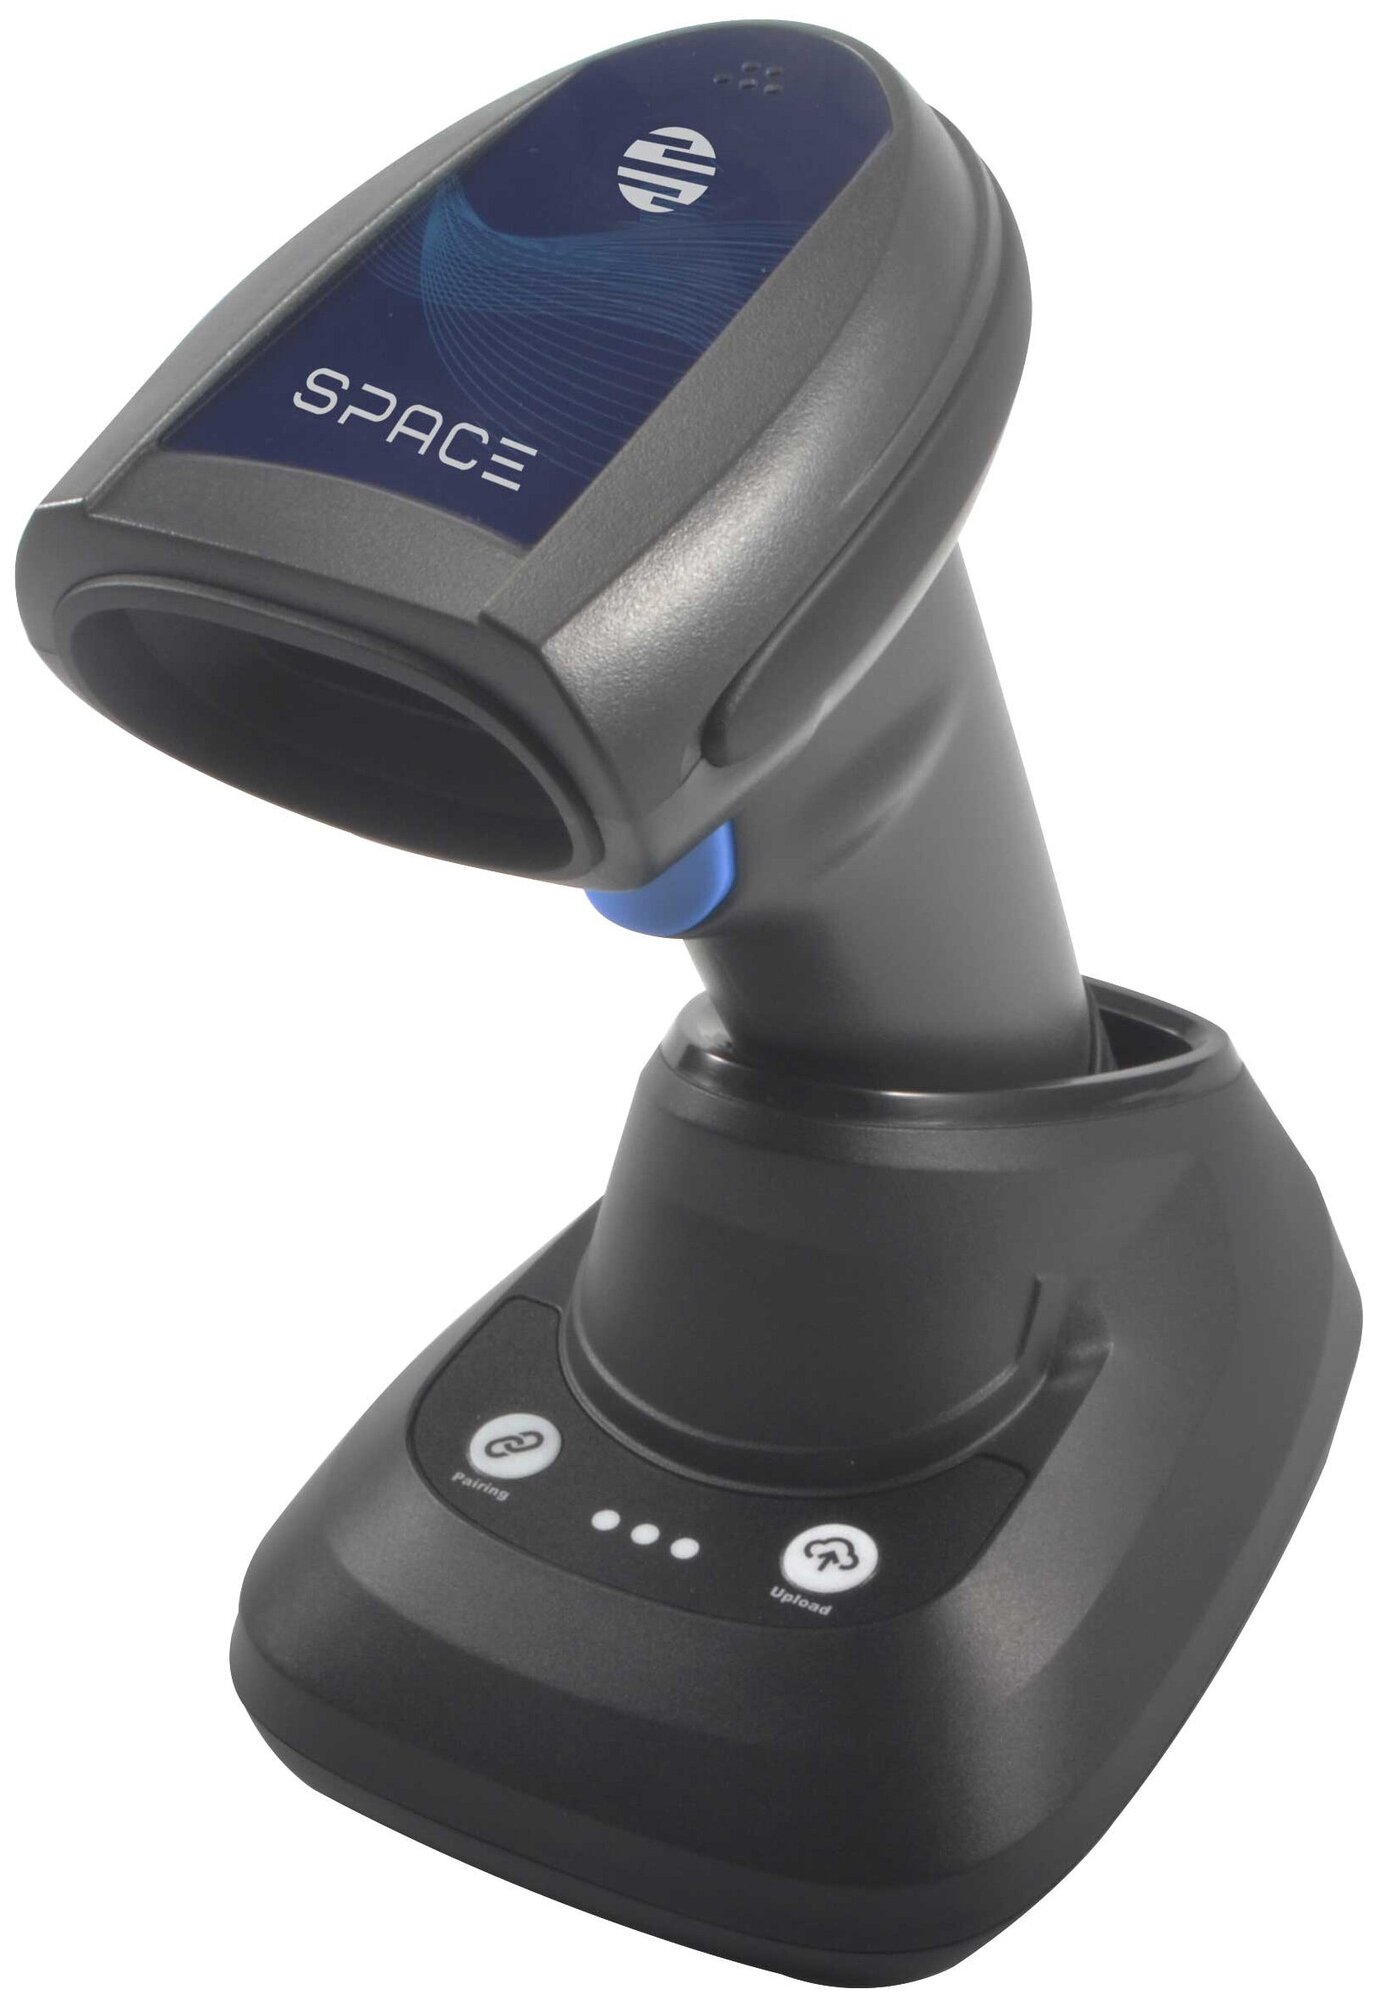 Сканер штрих-кода SPACE X-2020RC беспроводной/сканер для кассы / сканер для магазина / сканер для маркировки / для ЕГАИС, Честный знак, 1С